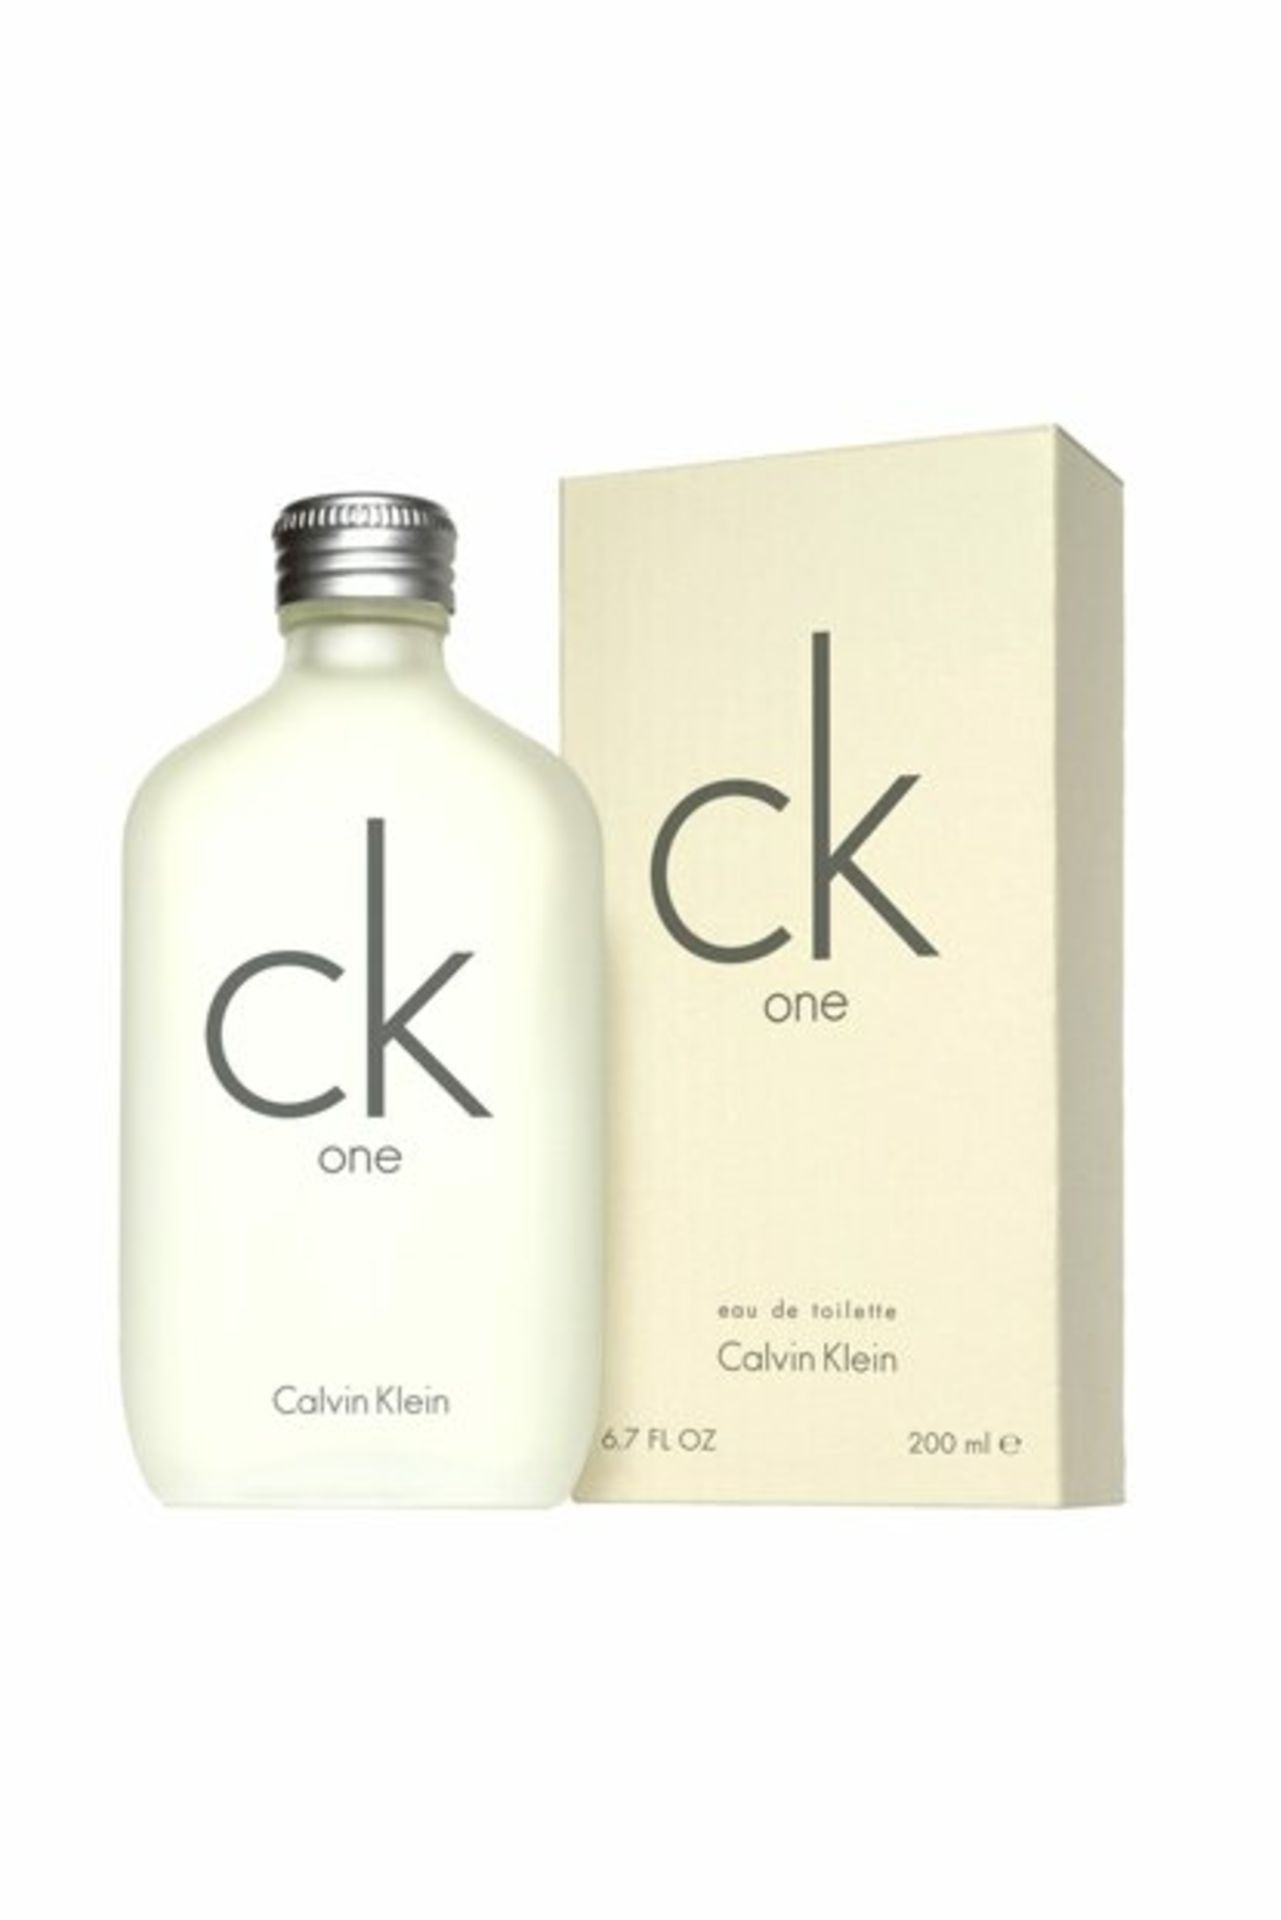 + VAT Brand New Calvin Klein CK One 200ml EDT Spray